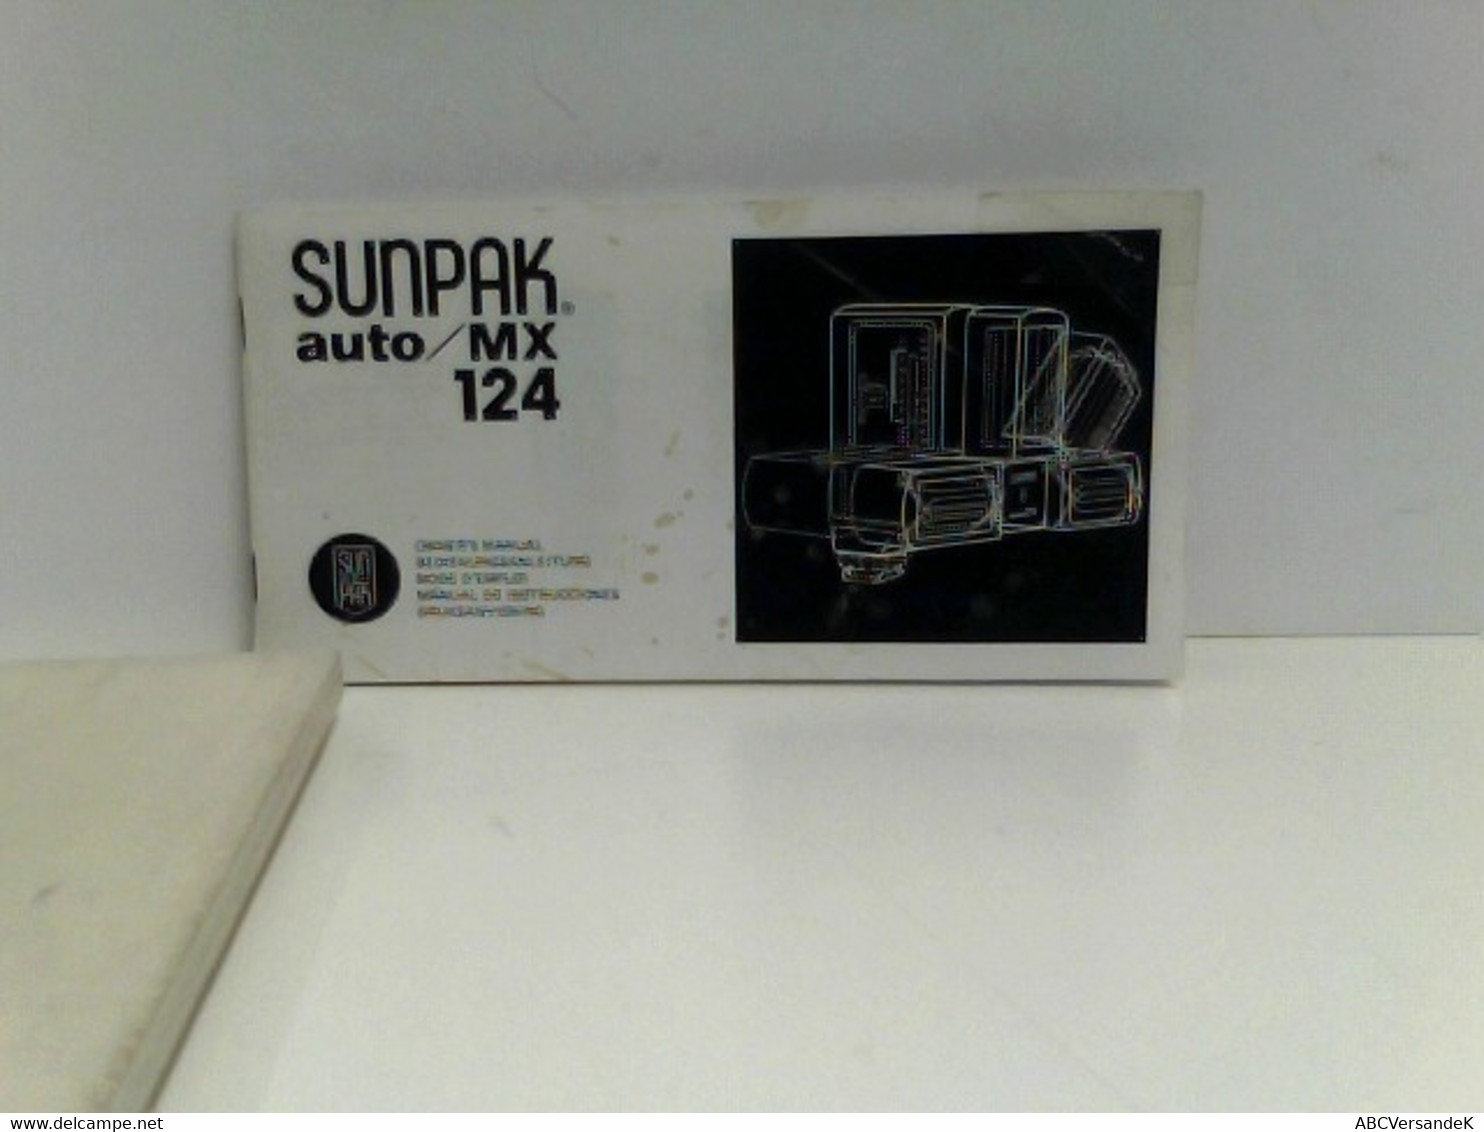 Sunpak Auto/MX 124 Blitzlichtgeräte - Photography